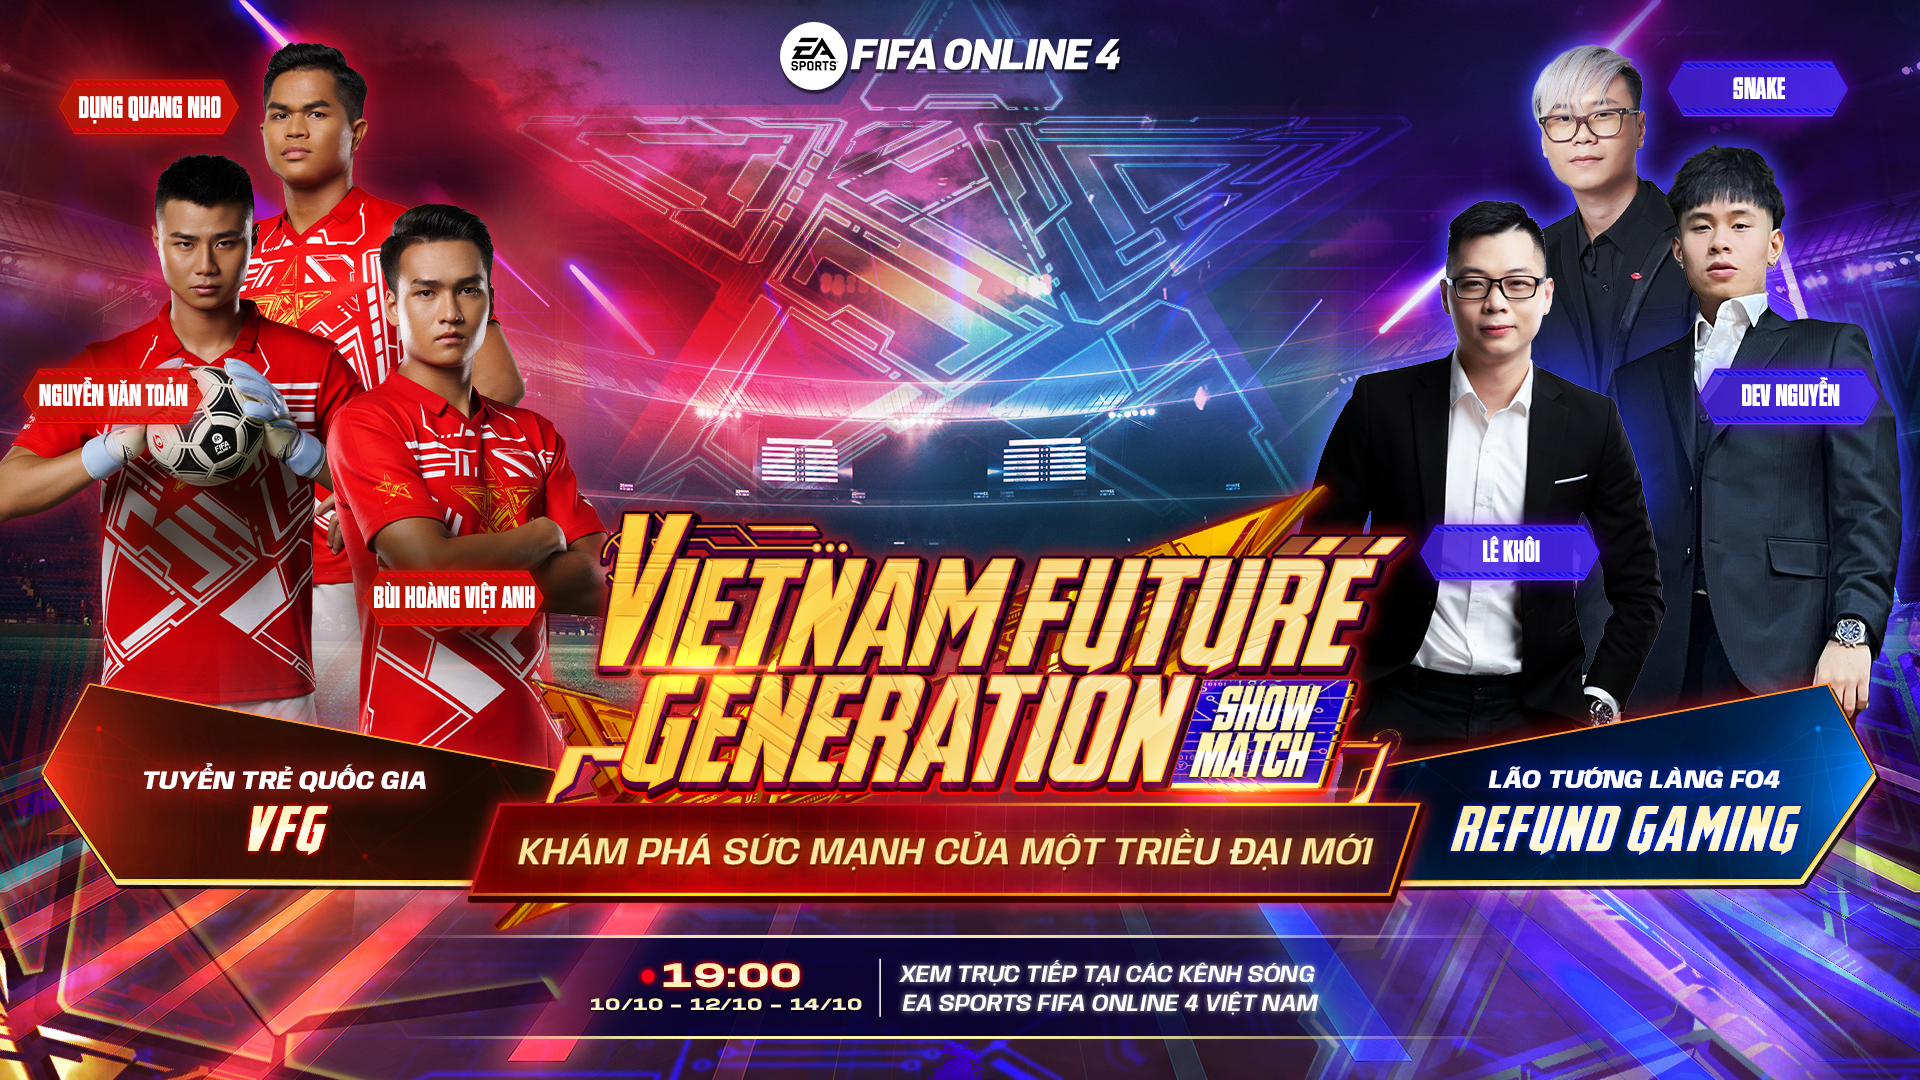 Refund Gaming tranh tài cùng U23 Việt Nam tại FIFA Online 4 VFG Showmatch 2022 - Ảnh 1.